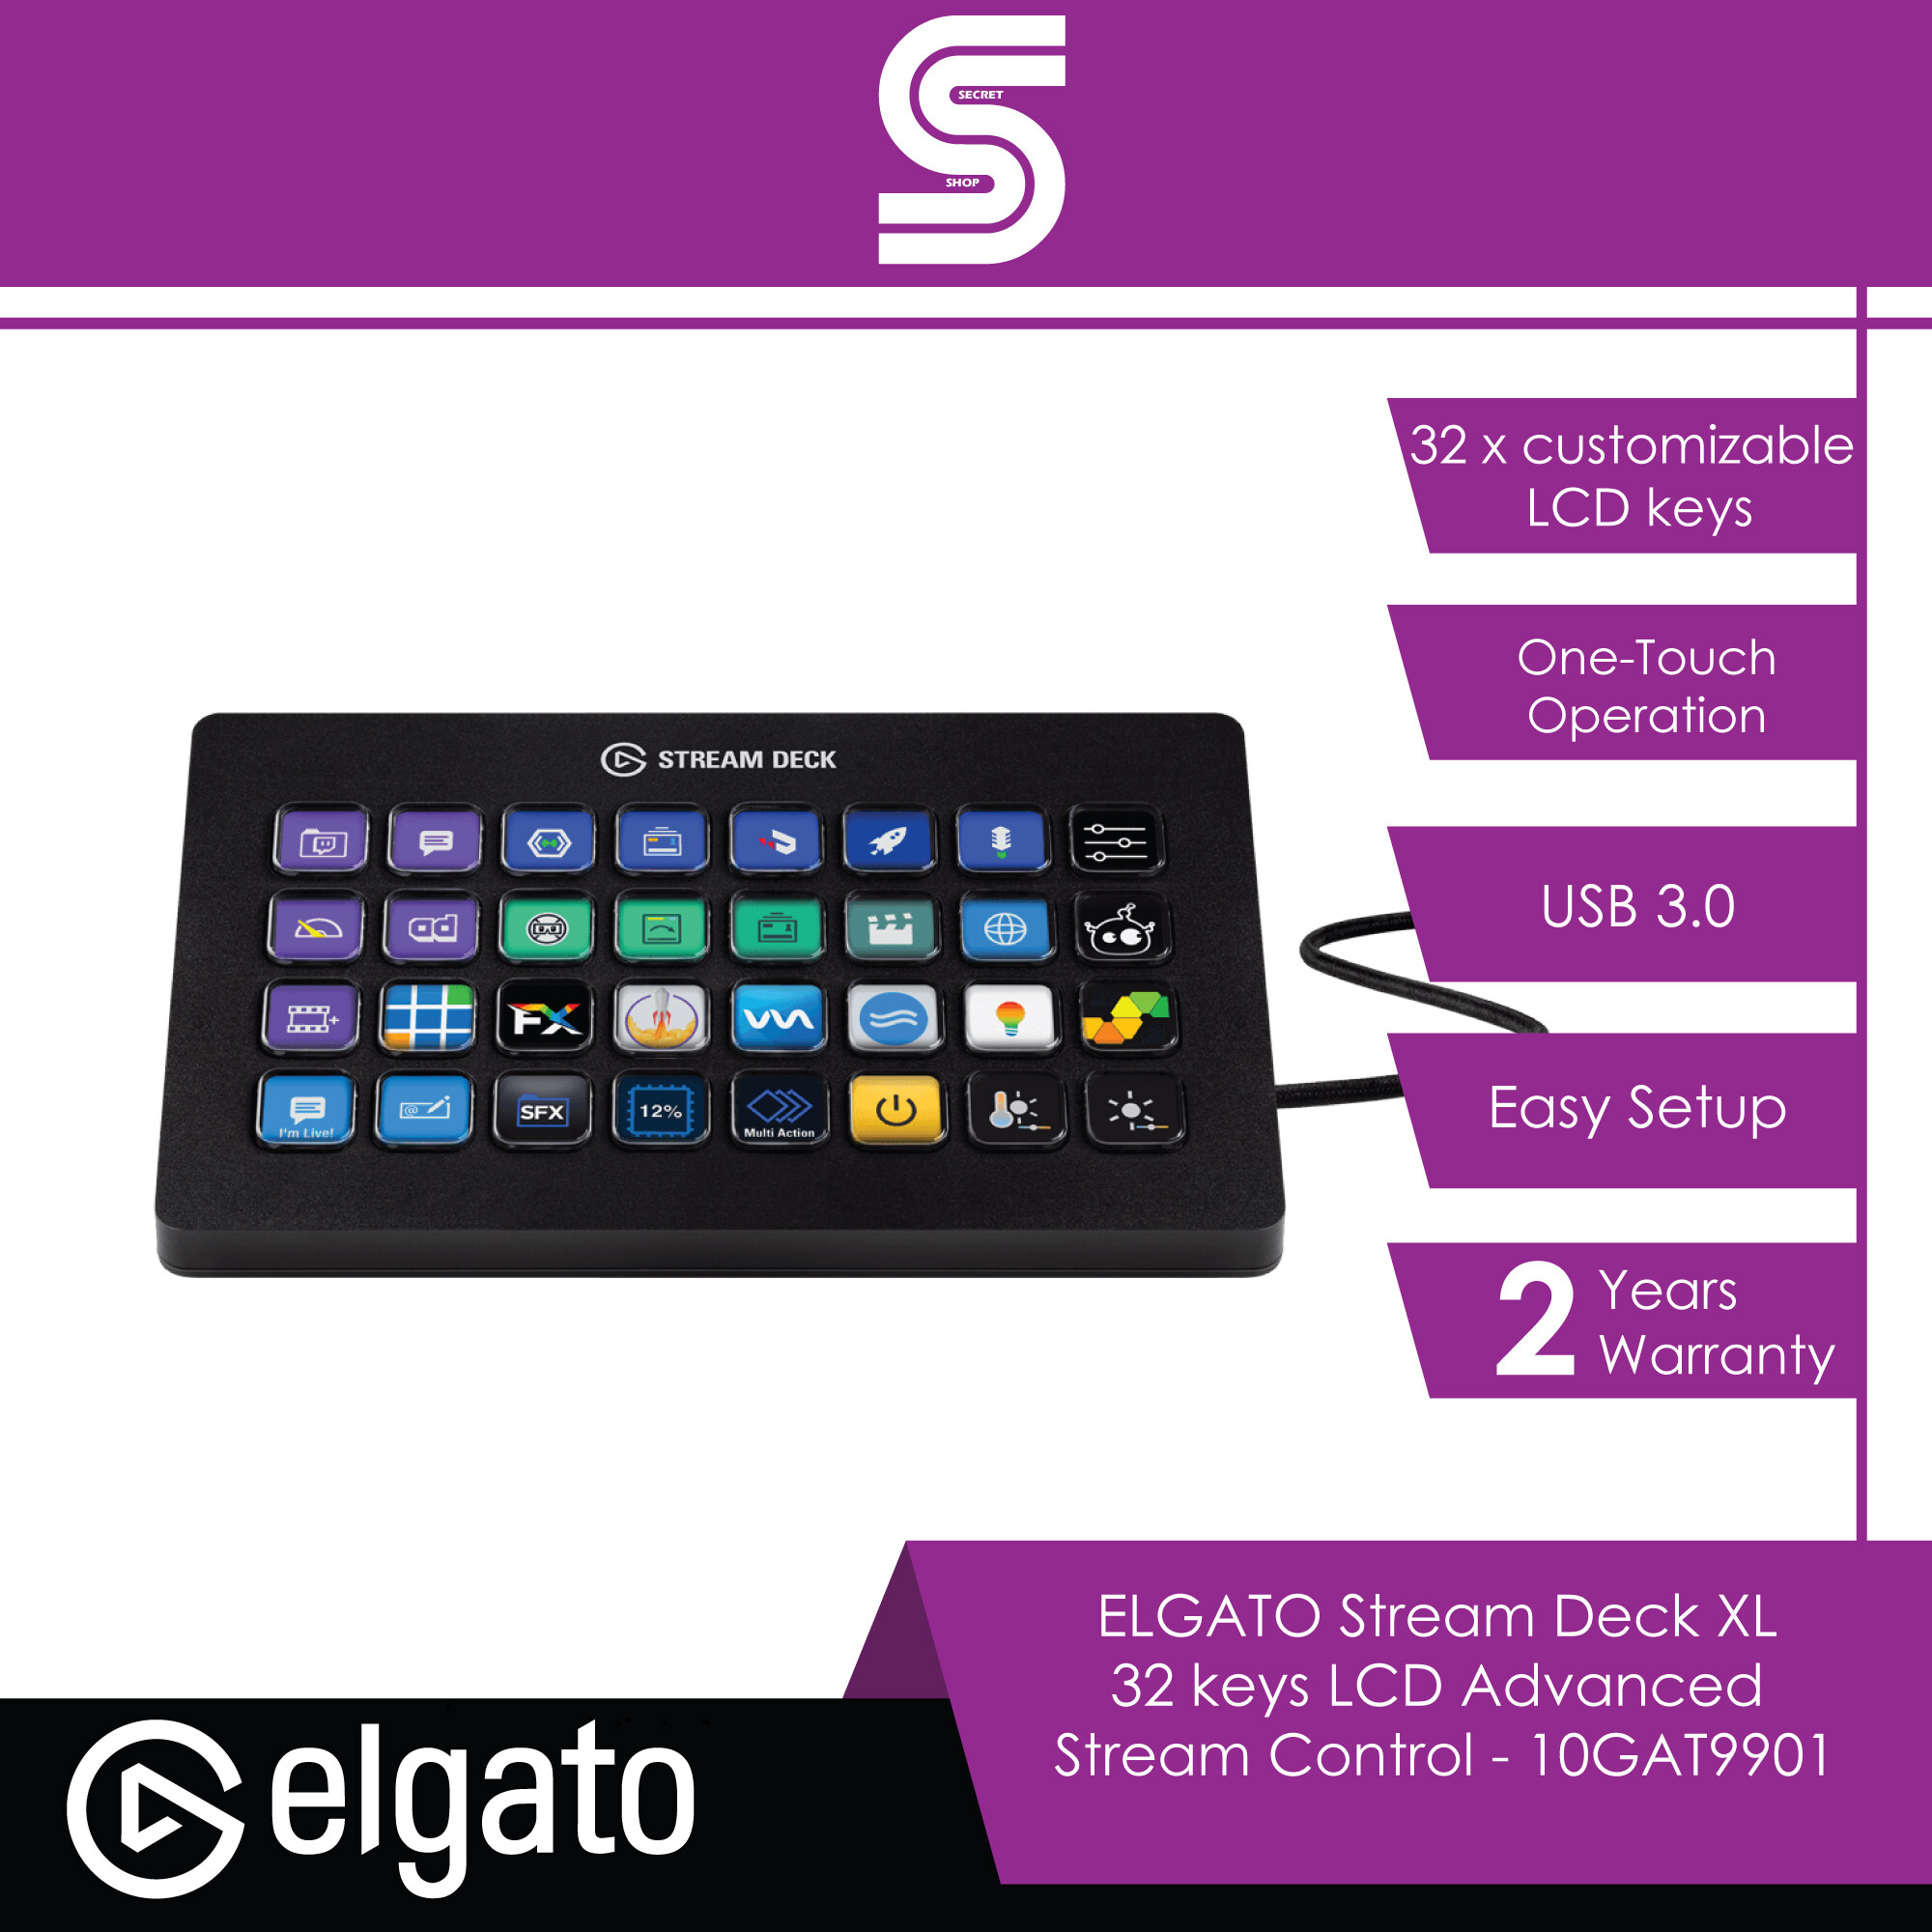 ELGATO Stream Deck XL 32 keys LCD Advanced Stream Control - 10GAT9901